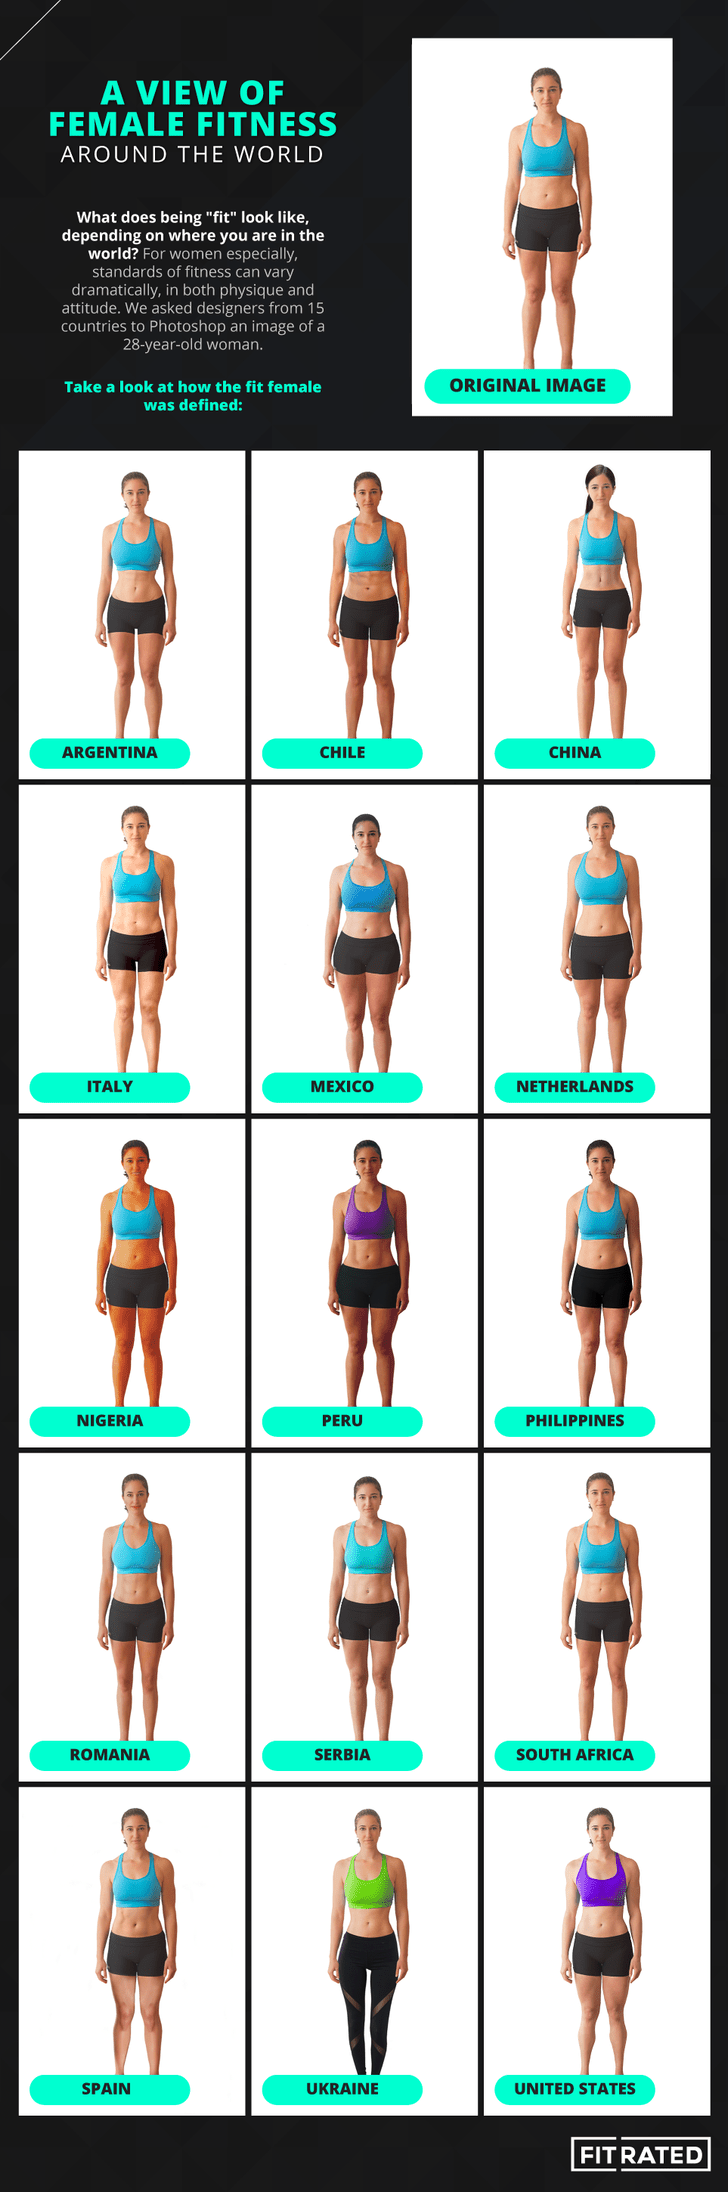 Фото №2 - Фитнес-эксперты выяснили, как выглядит идеальное женское тело в разных странах (картинки прилагаются!)